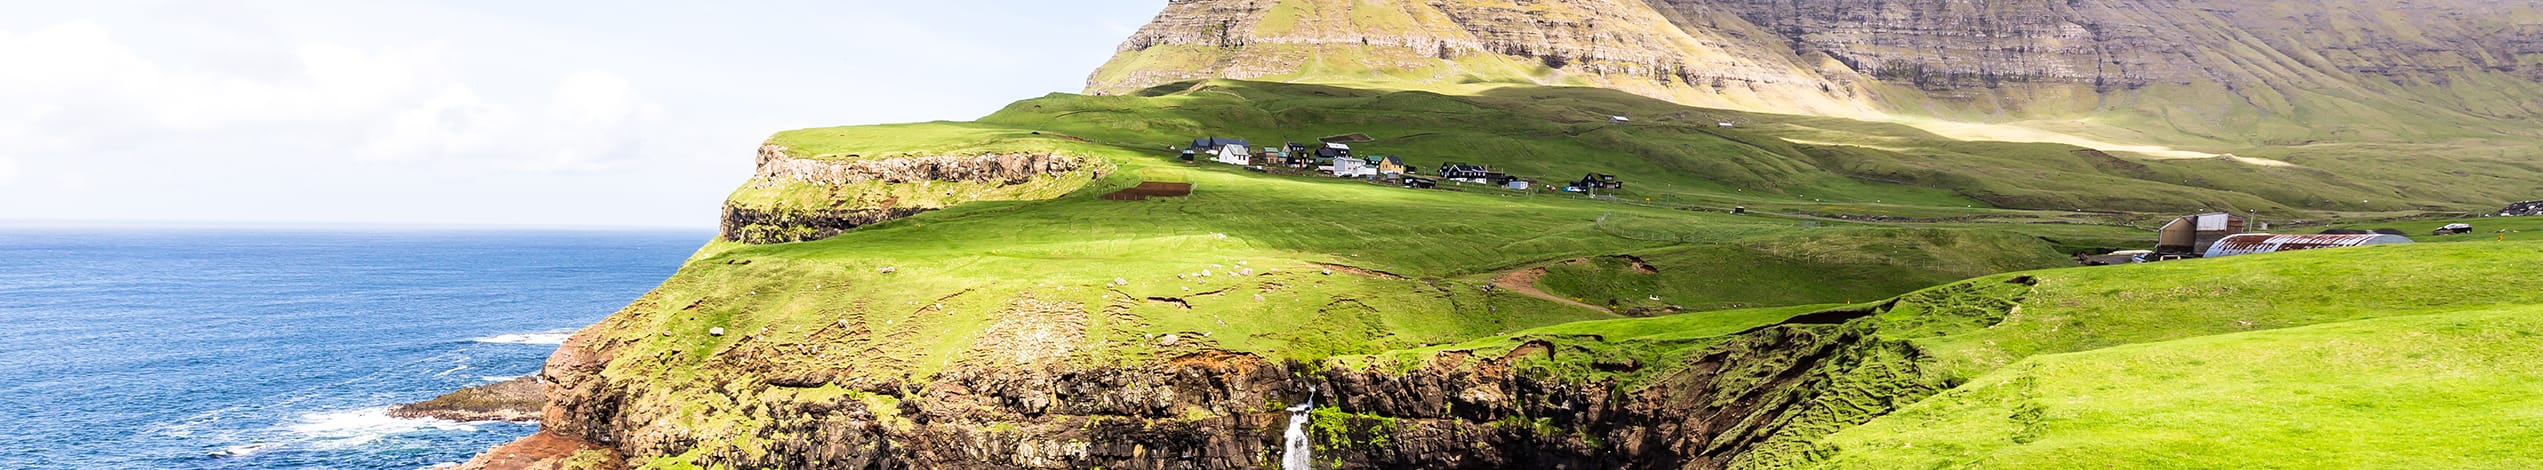 Rejseforedrag om Færøerne